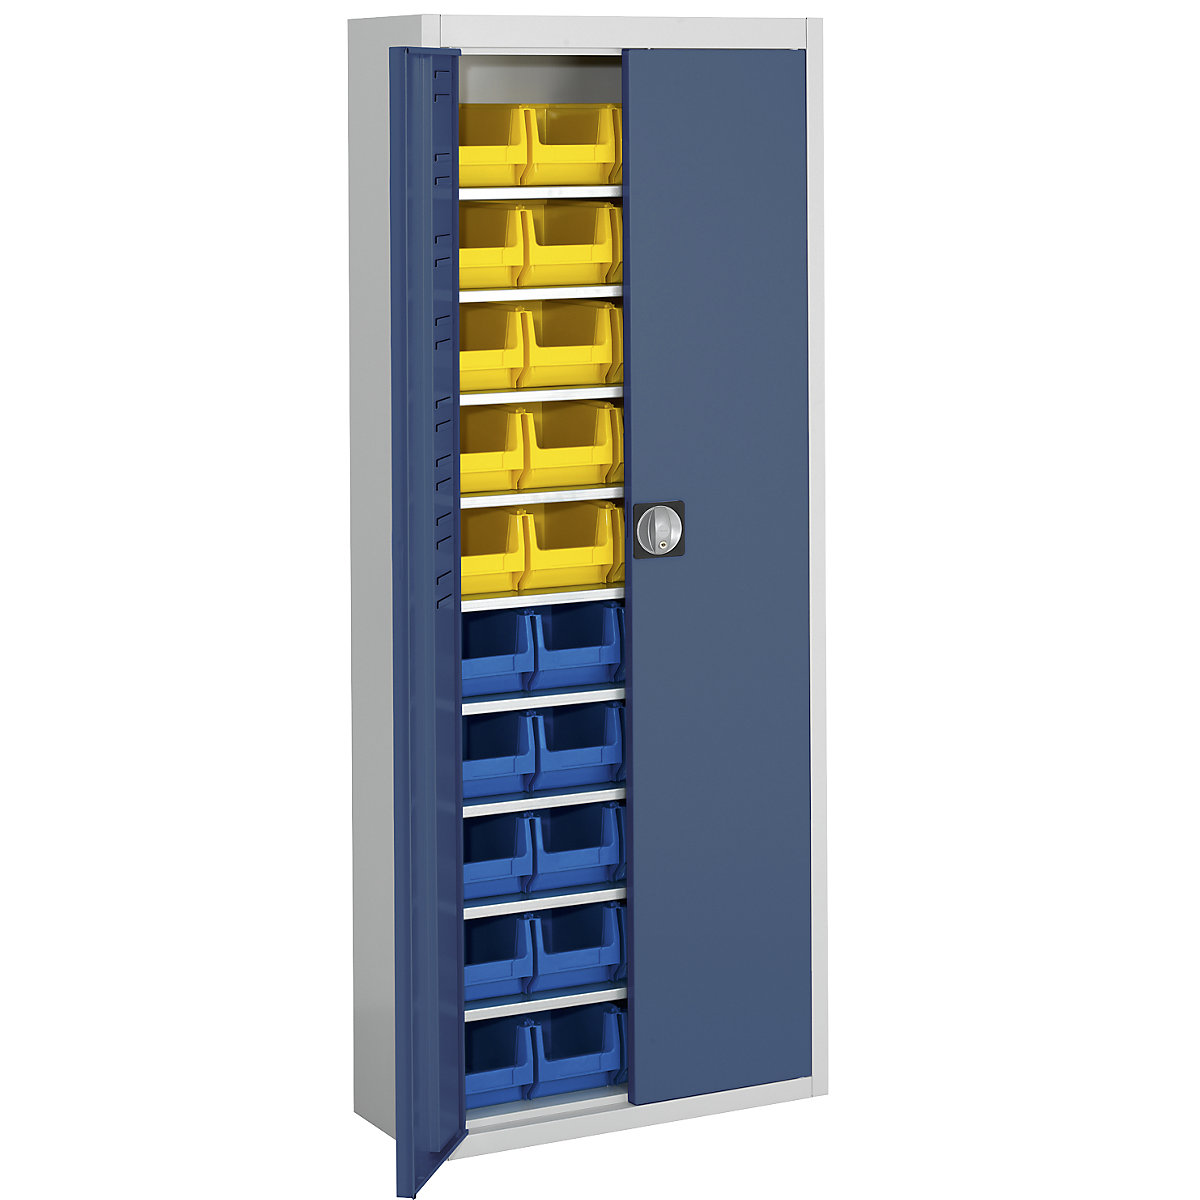 Magazinschrank mit Sichtlagerkästen mauser, HxBxT 1740 x 680 x 280 mm, zweifarbig, Korpus grau, Türen blau, 40 Kästen-9